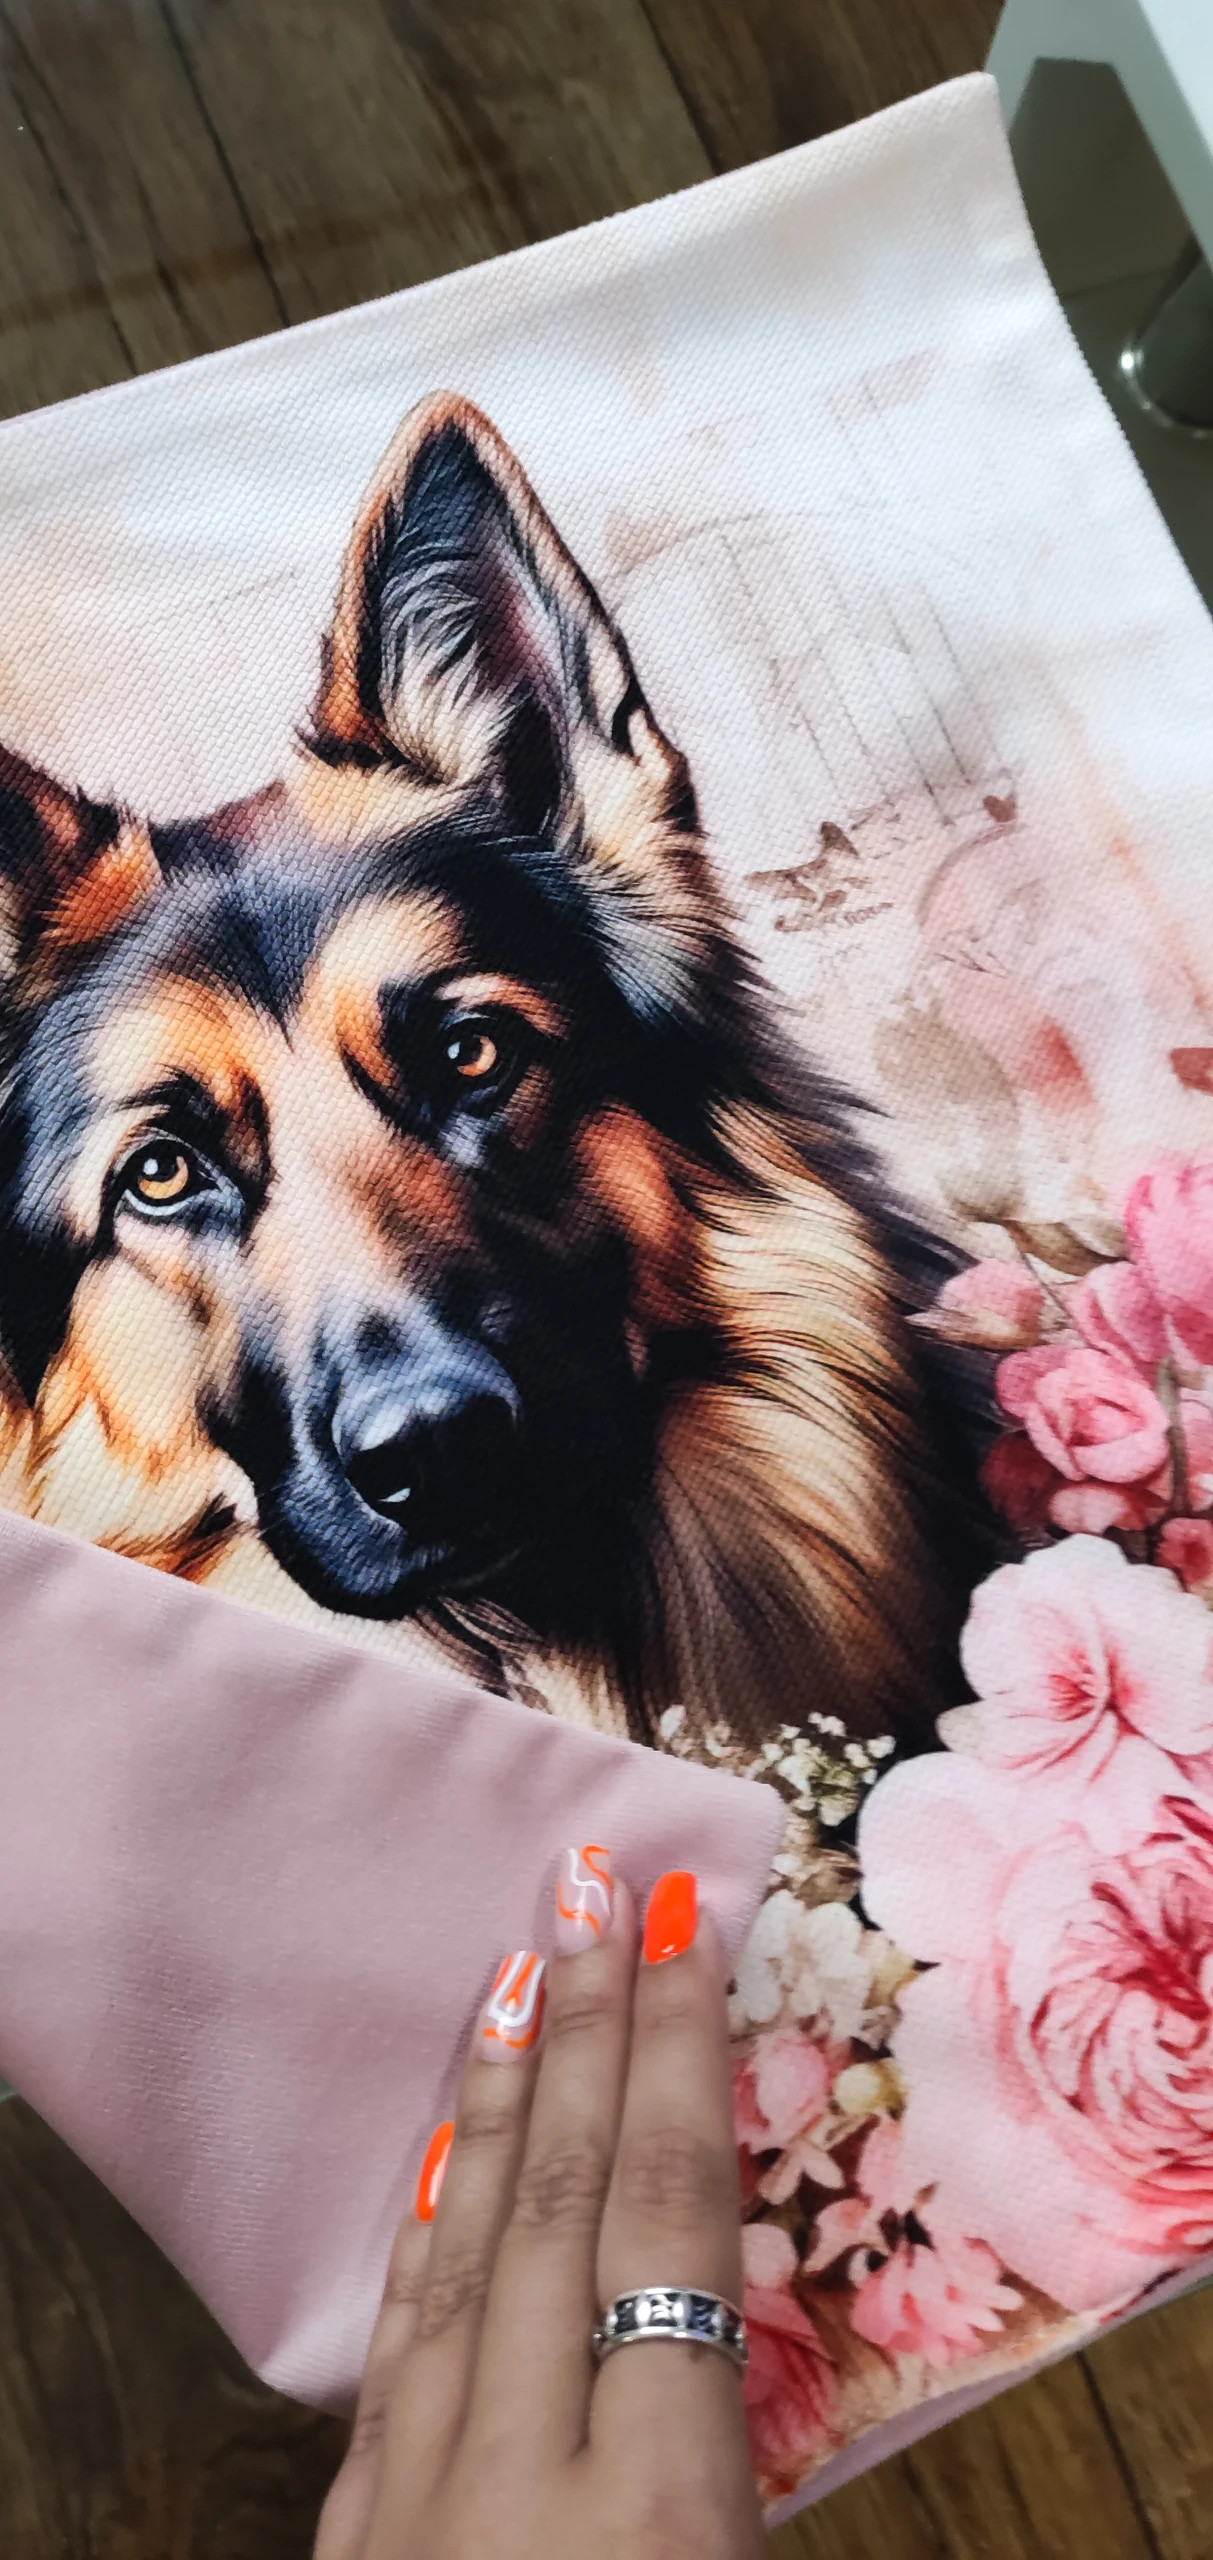 Poszewka kolorowa kwiaty pies pudrowy róż welur owczarek niemiecki